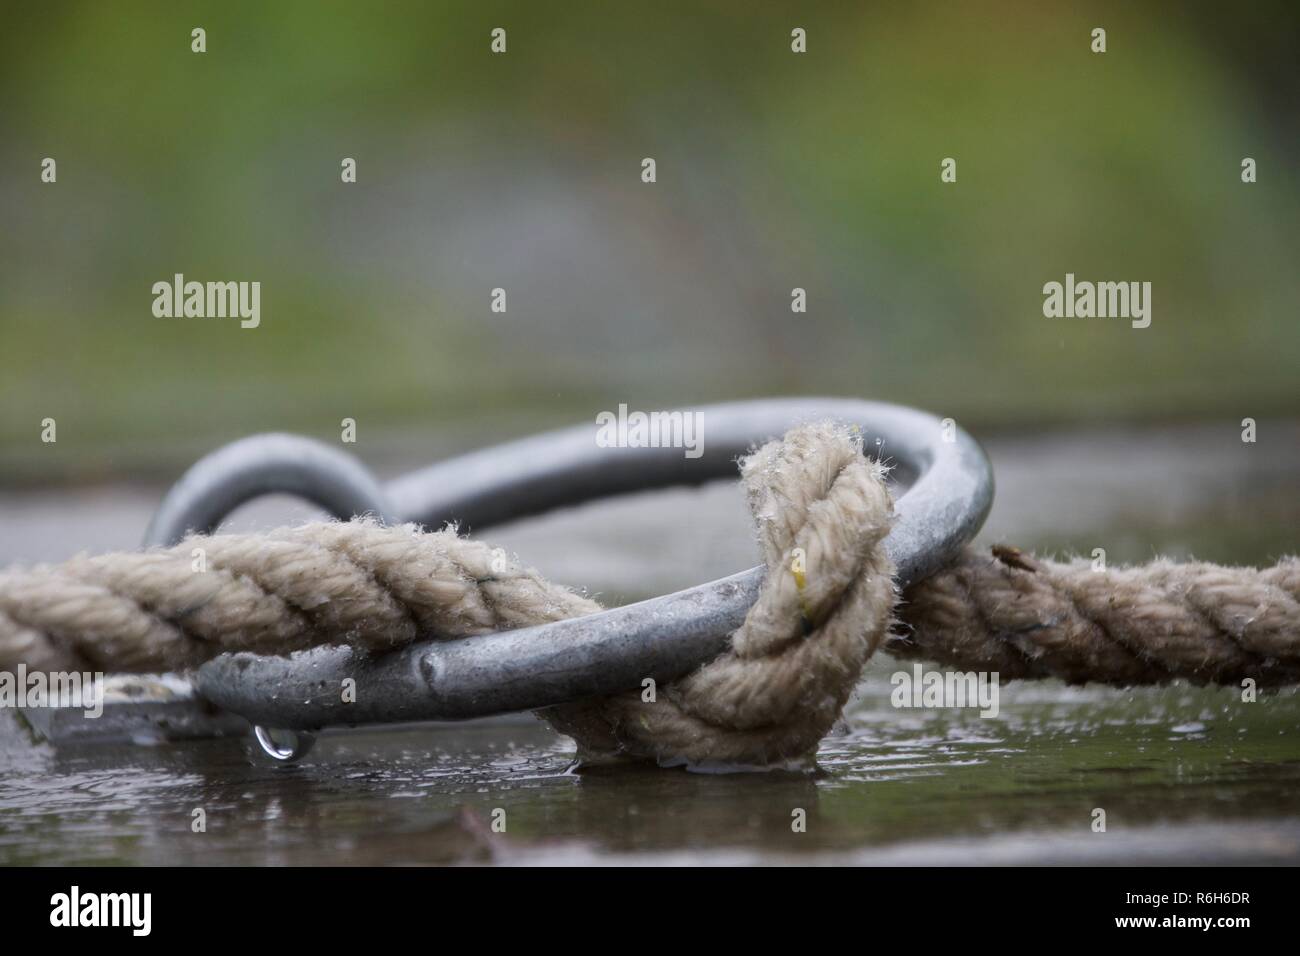 Anello di corda immagini e fotografie stock ad alta risoluzione - Alamy